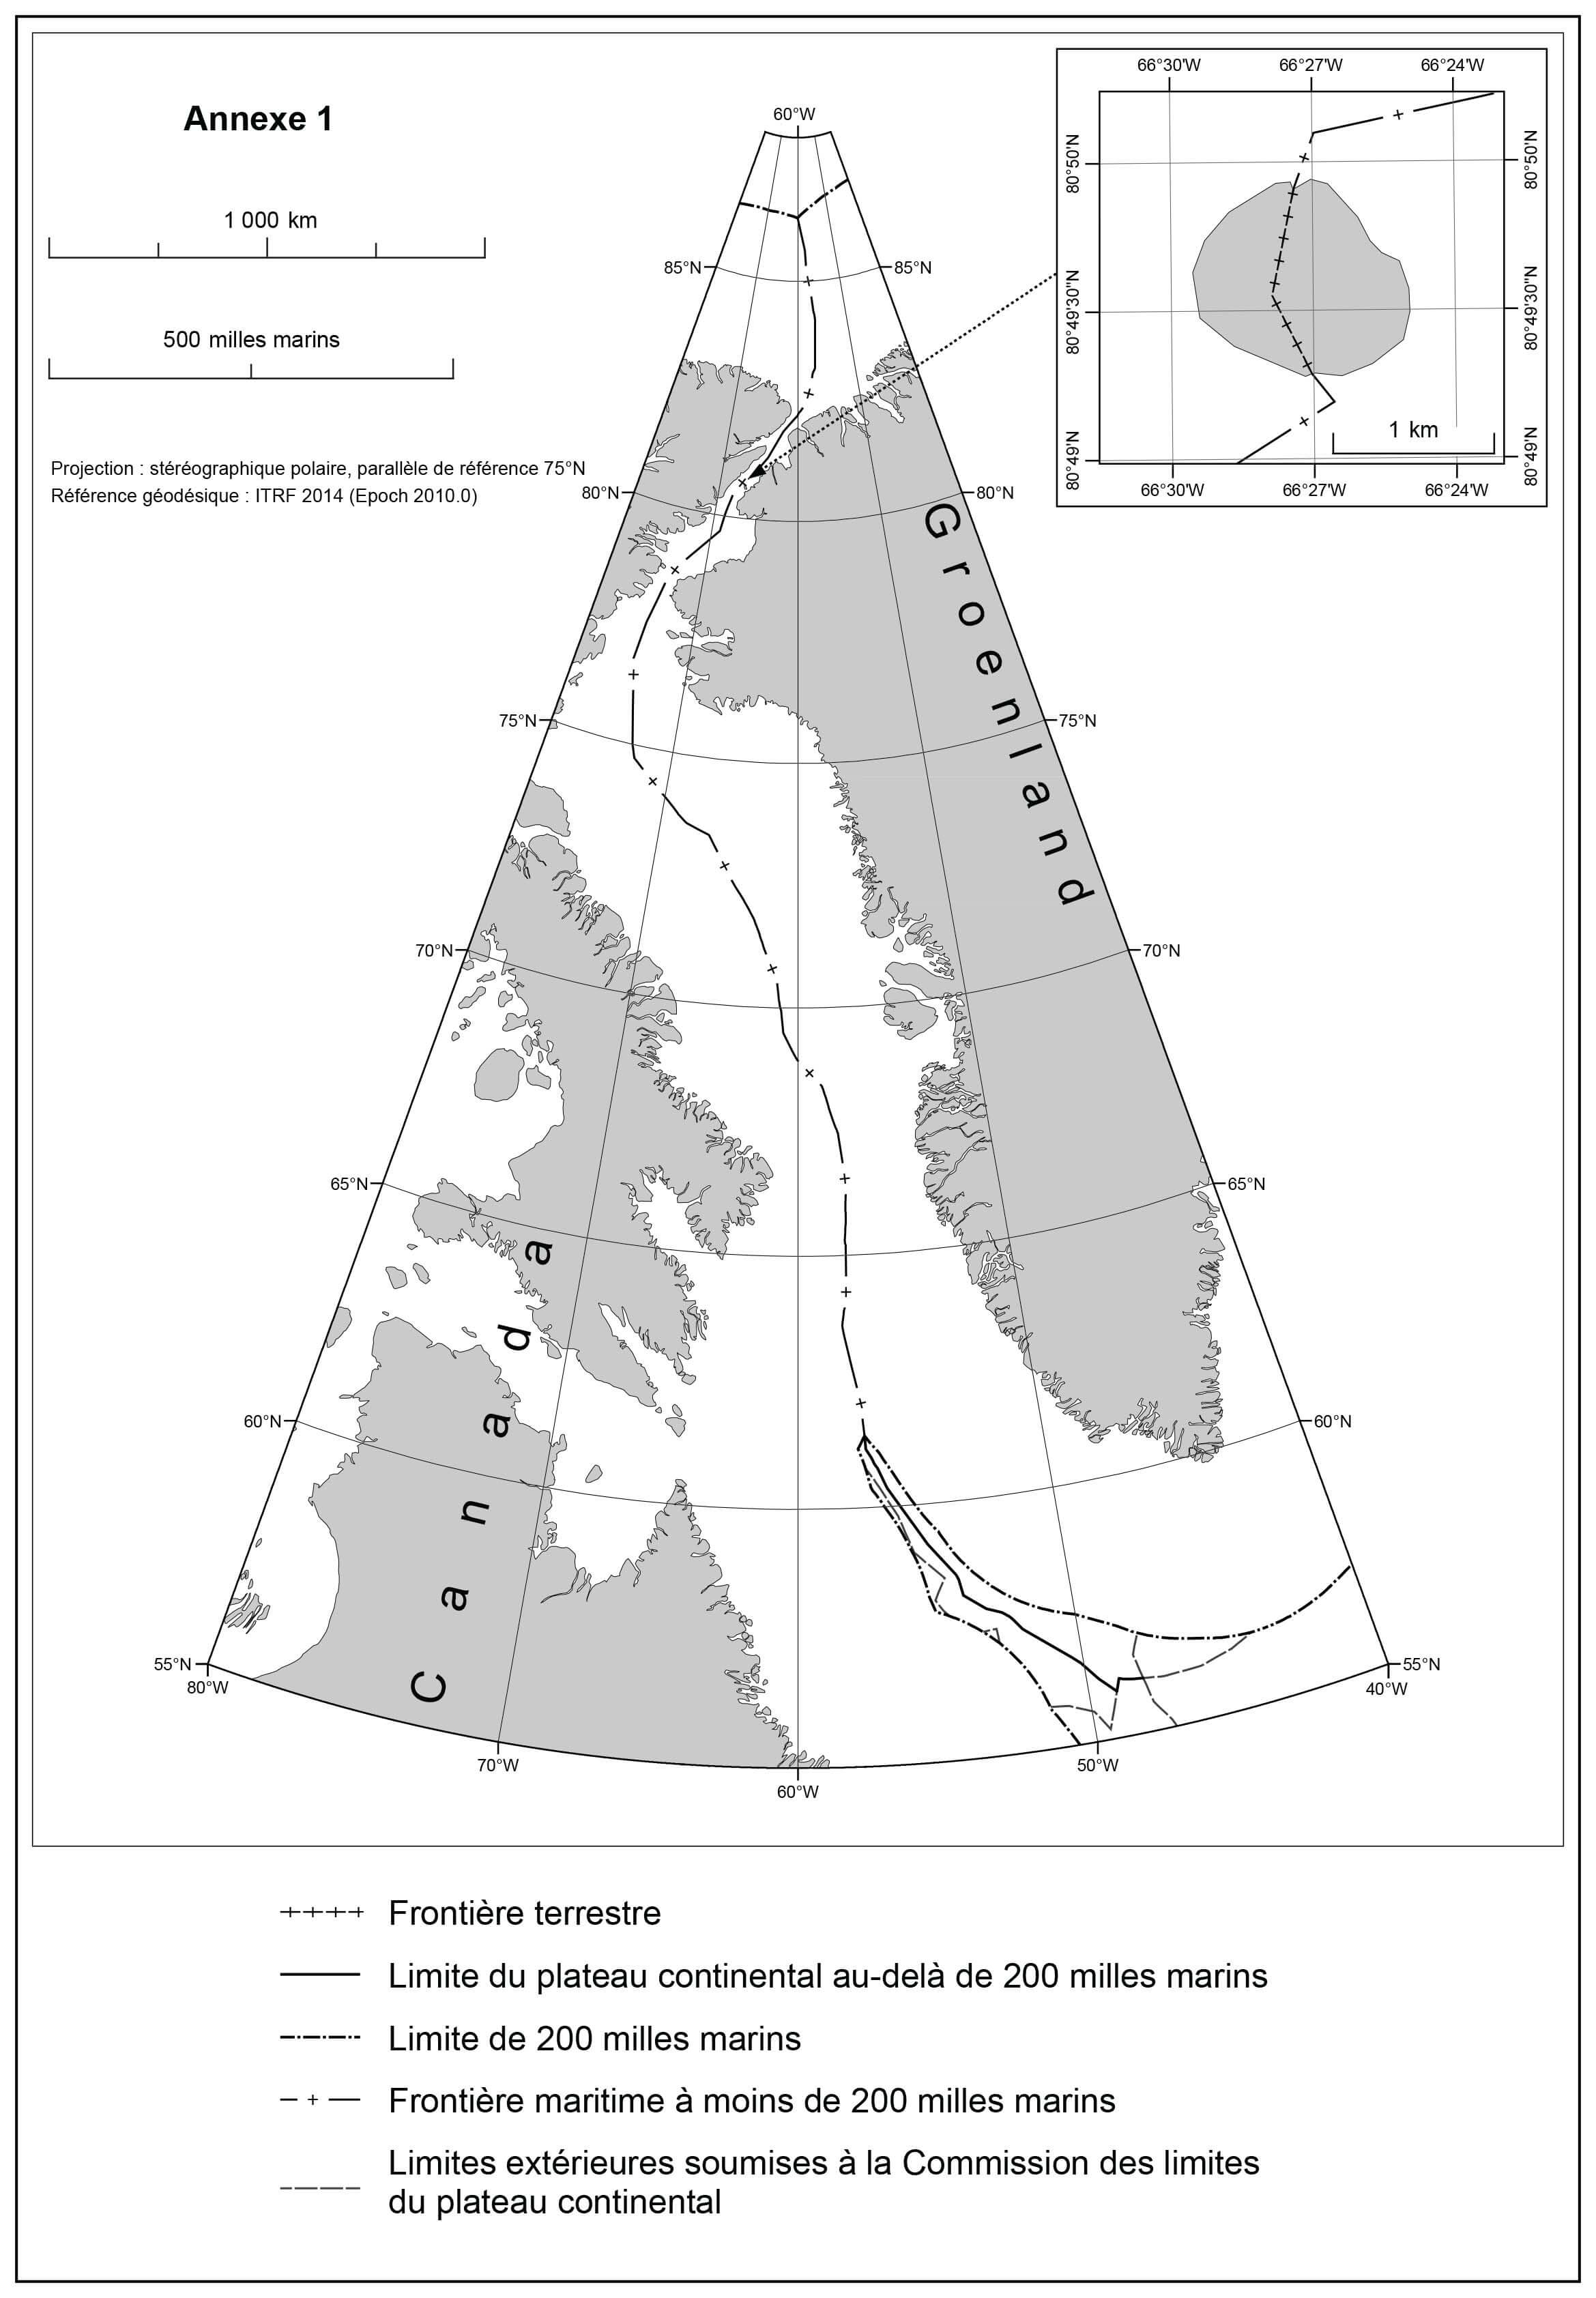 Carte montrant la frontière terrestre de l’île Tartupaluk (Hans) et la frontière maritime dans les 200 milles marins, y compris la mer de Lincoln.